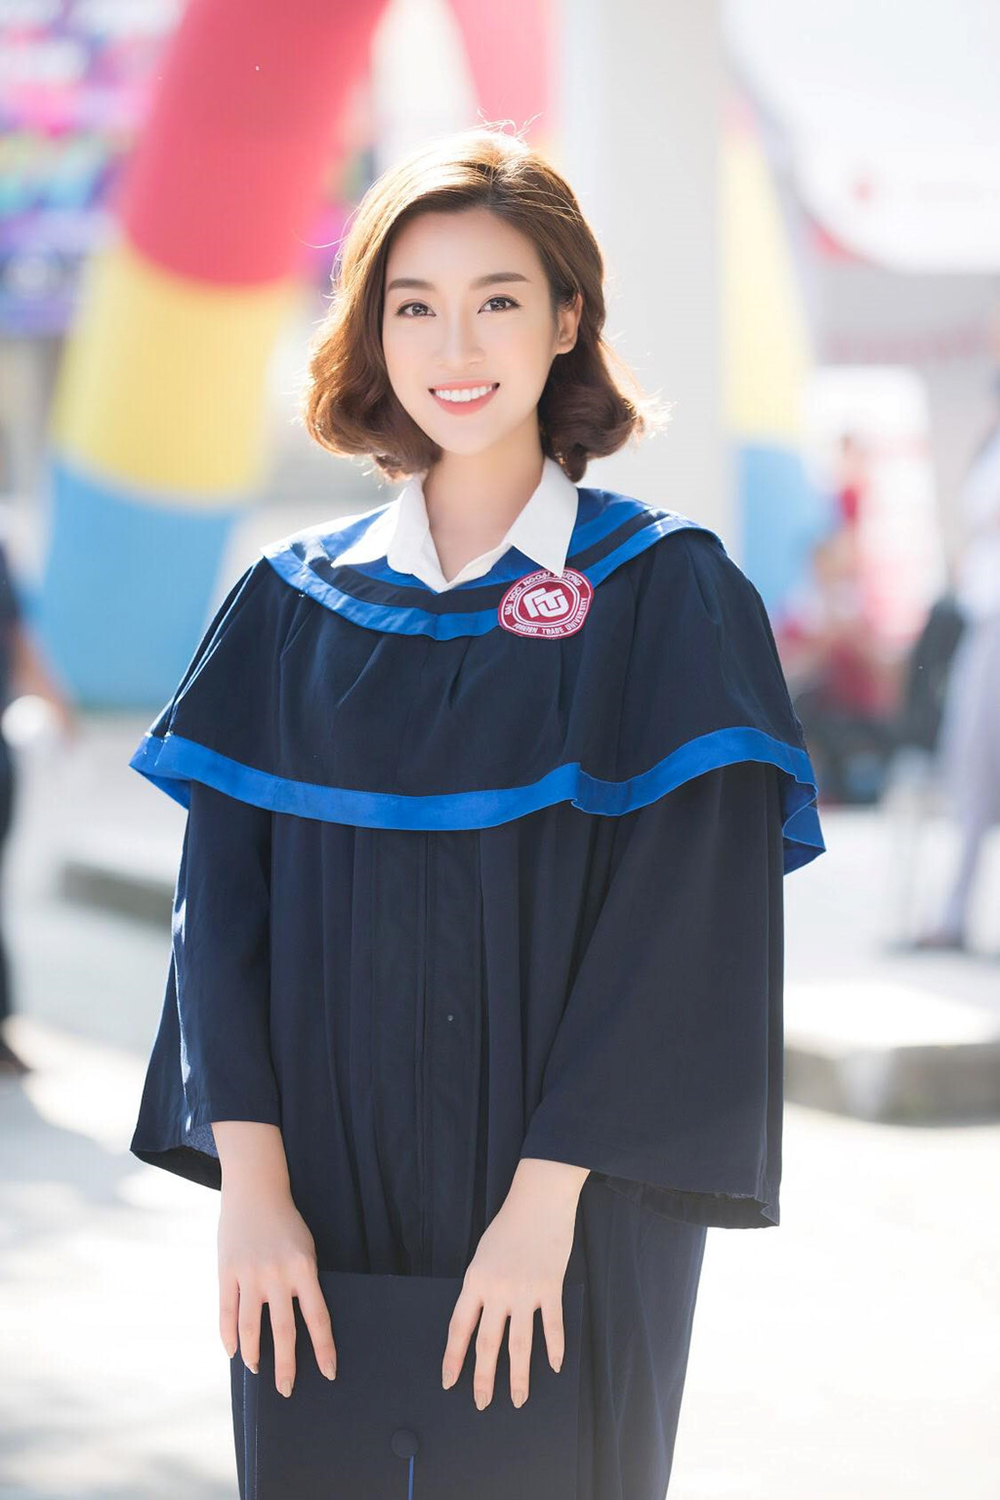 
Cách đây không lâu, người đẹp đã chính thức tốt nghiệp đại học trước khi kết thức nhiệm kỳ của 1 Hoa hậu.